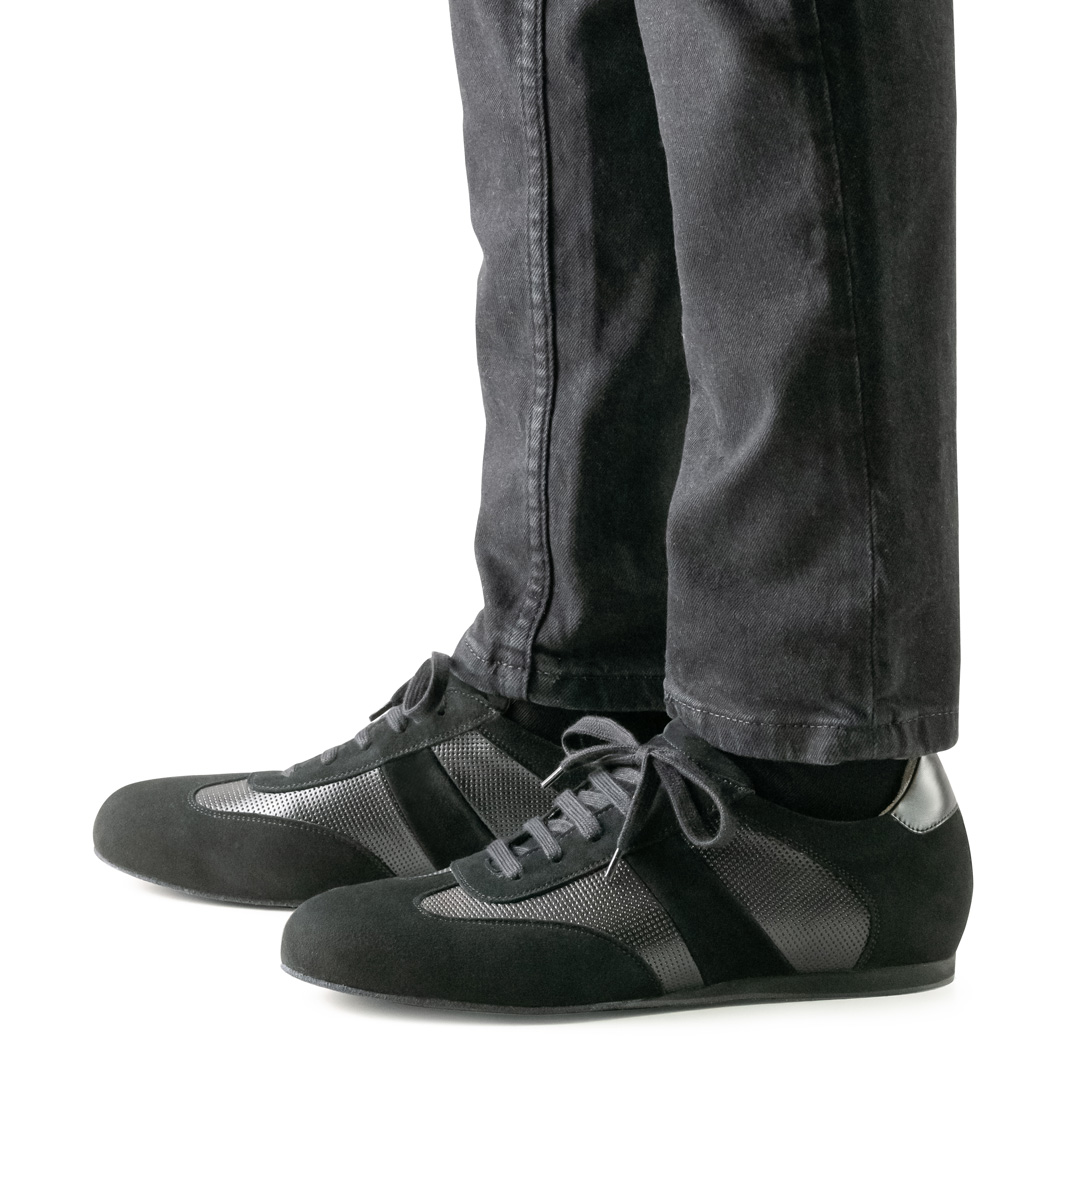 Tanzsneaker von Werner Kern in Kombination mit schwarzer Jeans